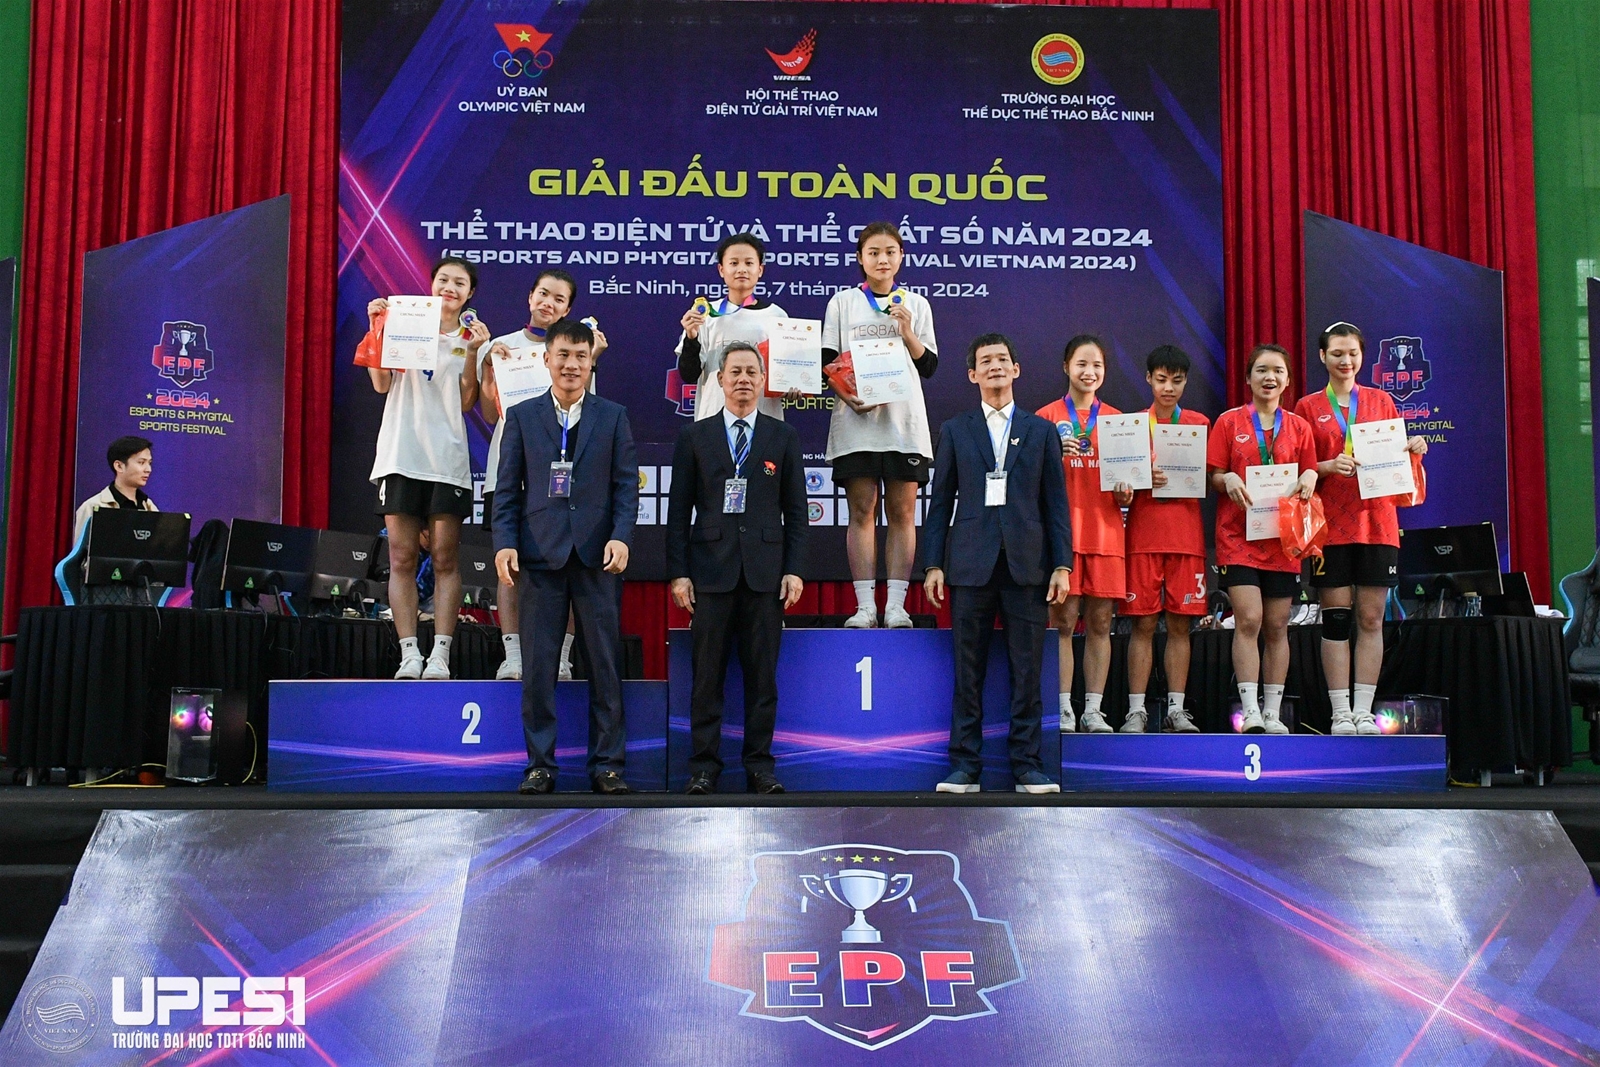 Giải đấu toàn quốc Thể thao điện tử và thể chất số năm 2024 được tổ chức tại Trường Đại học TDTT Bắc Ninh